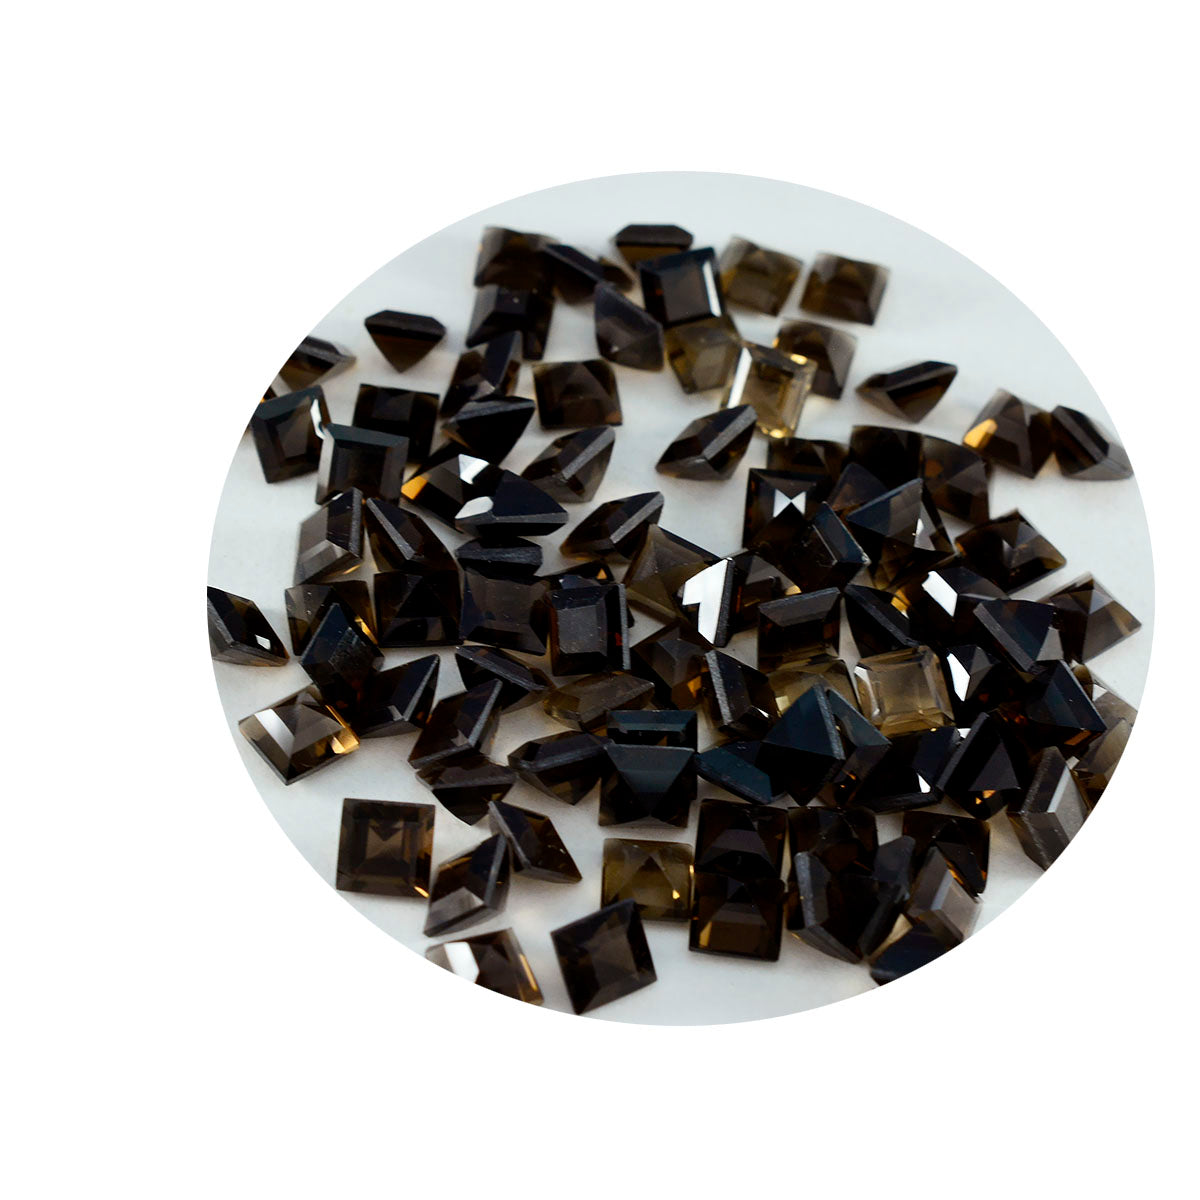 riyogems 1 шт. настоящий коричневый дымчатый кварц ограненный 5x5 мм квадратной формы драгоценный камень отличного качества